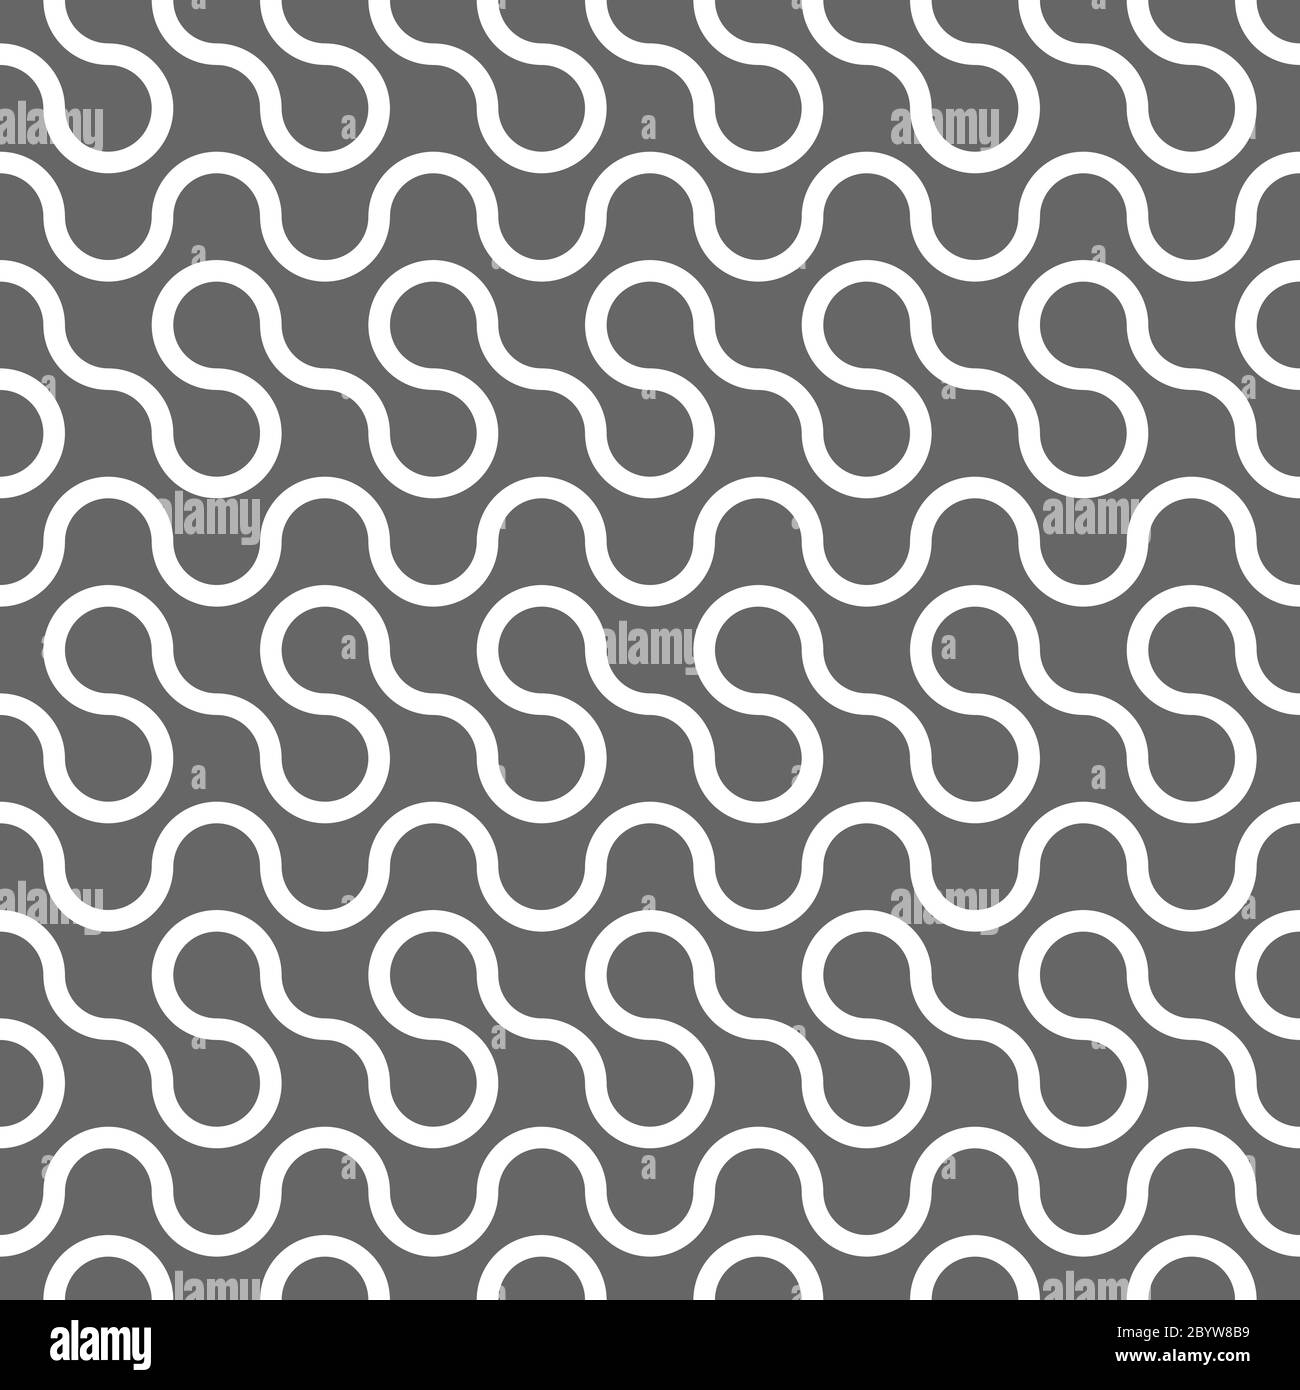 Abstraktes nahtloses Muster. Weiße kurvige Linien auf grauem Hintergrund. Vektorfeld. Stock Vektor